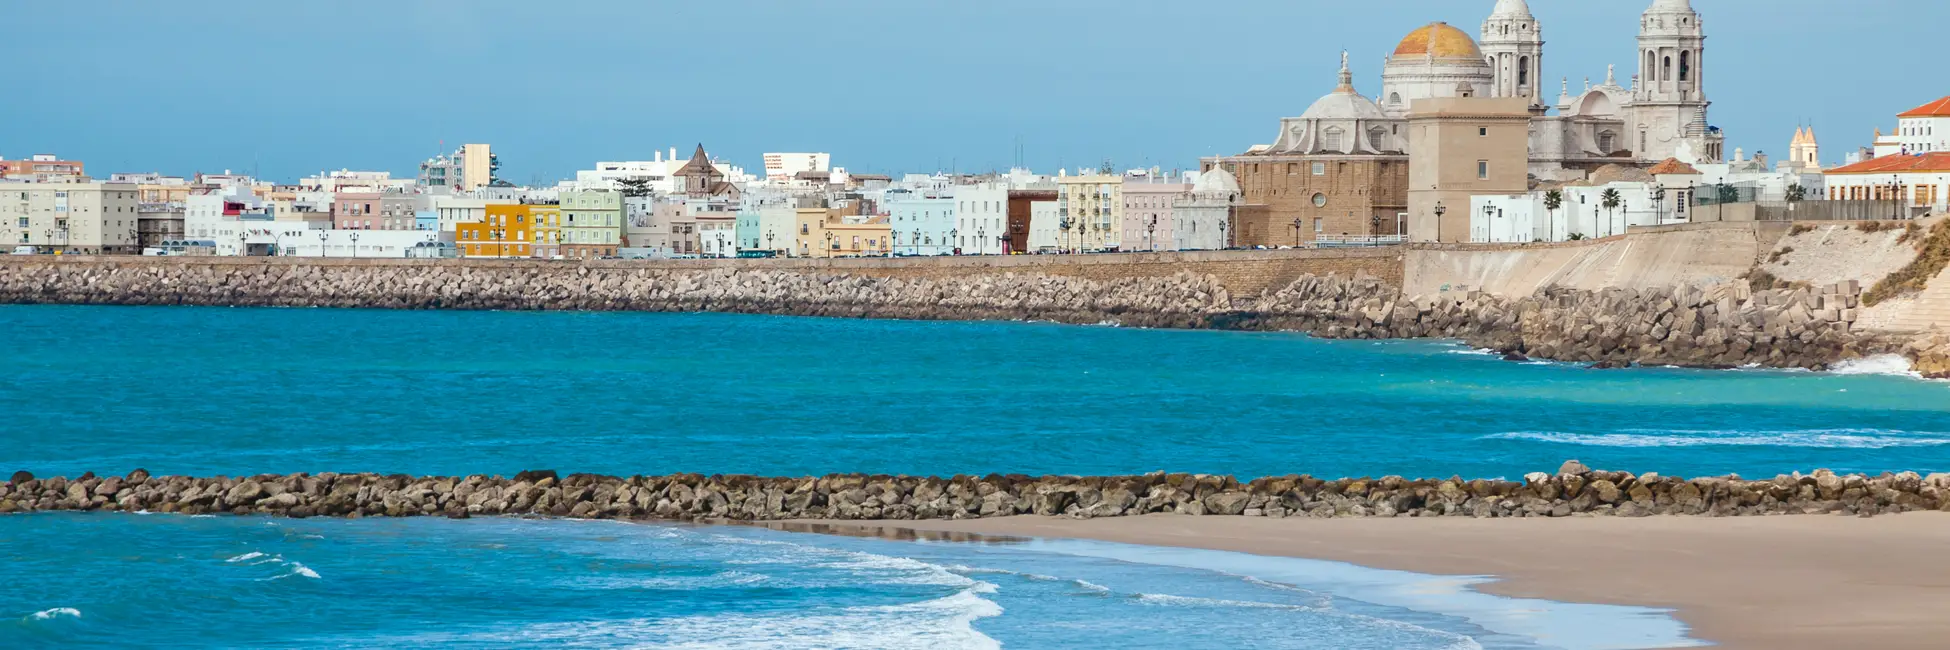 La ville de Cadix et sa plage 